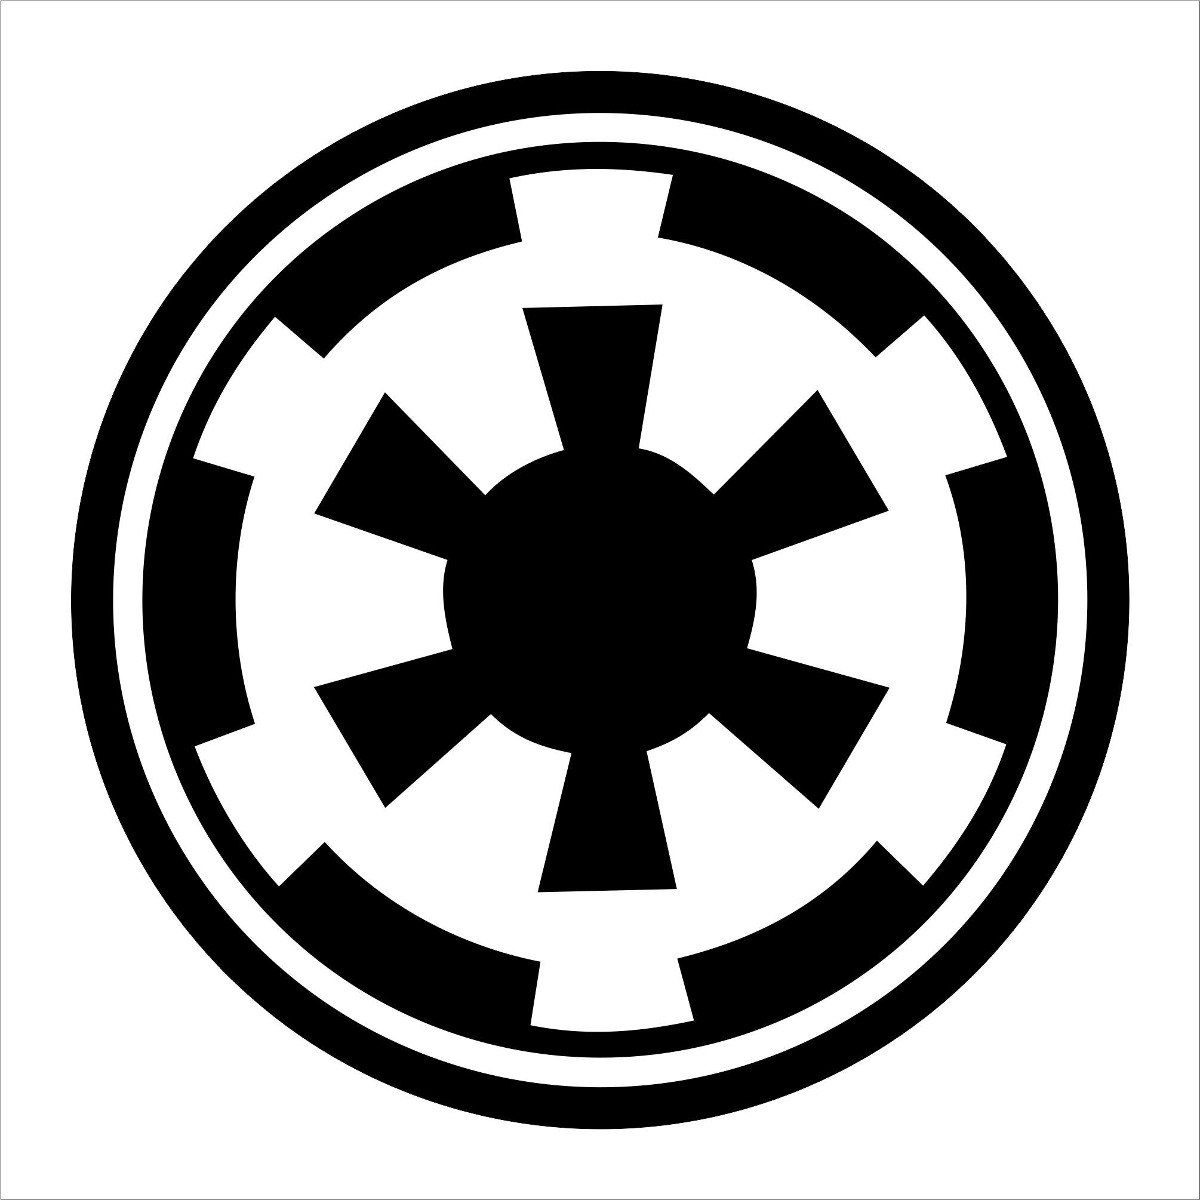 Imperio Star Wars Logo - ClipArt Best